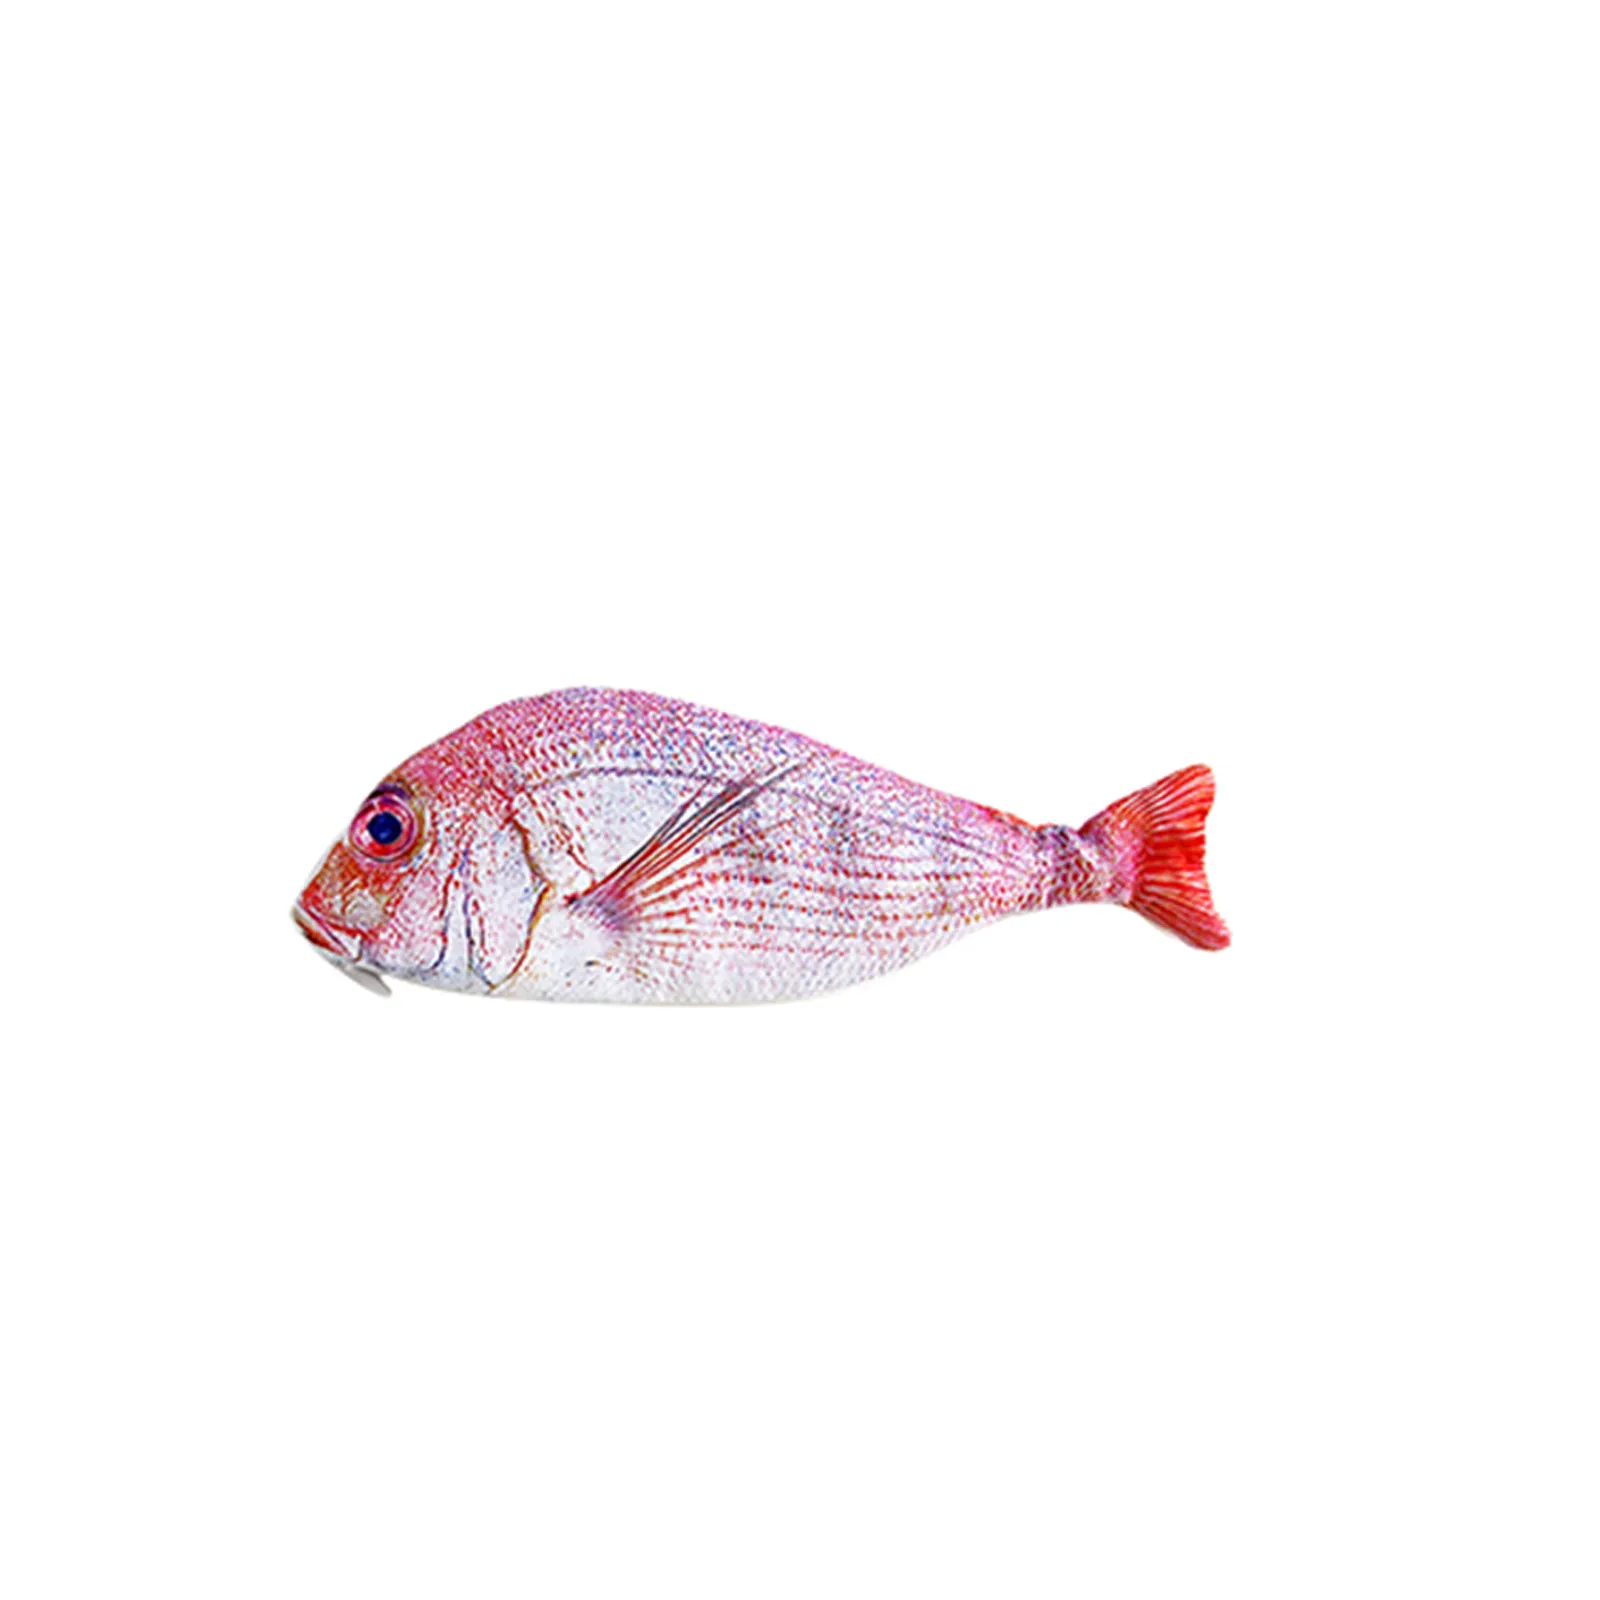 FISH SHAPE PENCIL Case Pen Bag Eye-Catching Friendly Design Simulation Of  Carp $11.02 - PicClick AU